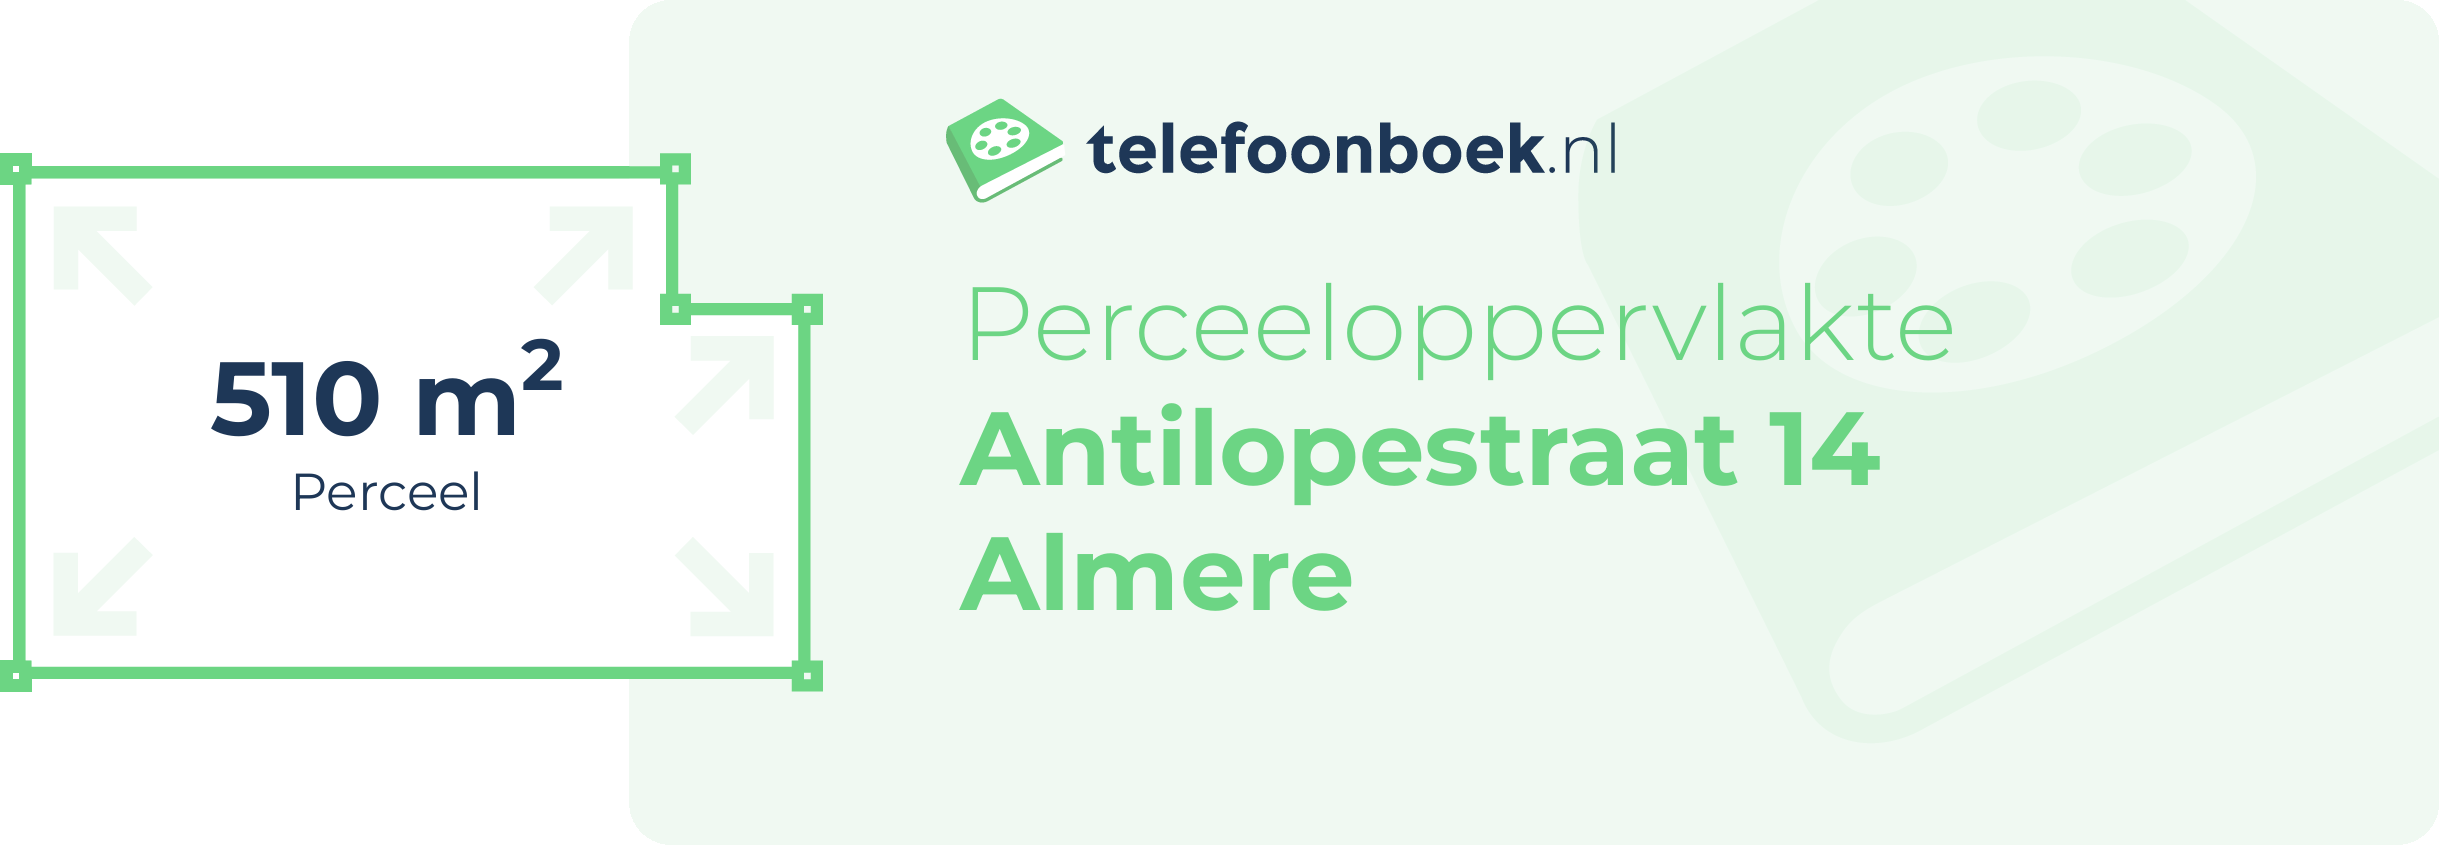 Perceeloppervlakte Antilopestraat 14 Almere